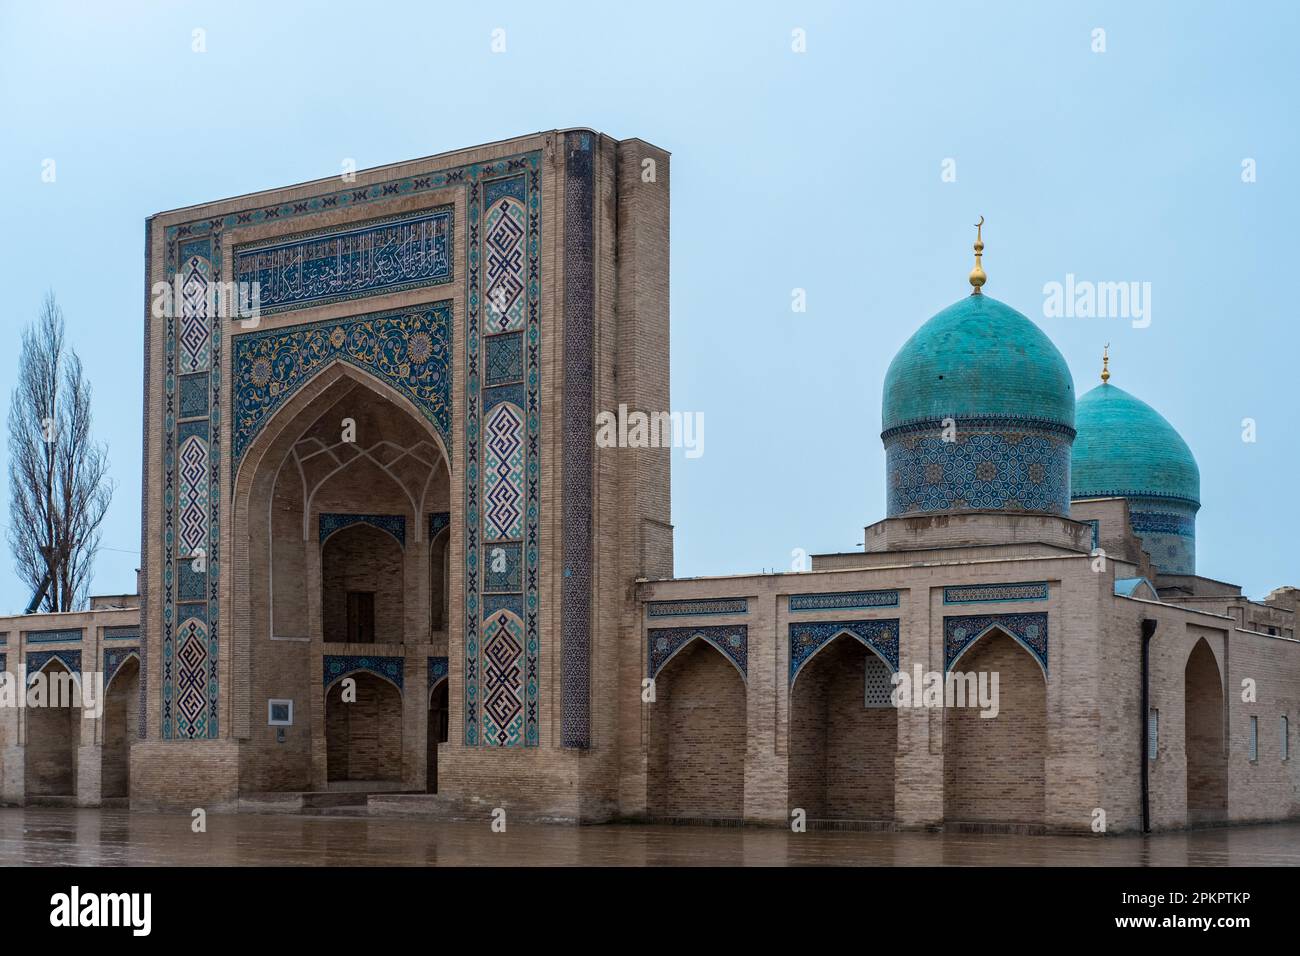 Belle photo de mosaïque classique de l'Ouzbékistan Tachkent, vue de Barak Khan Madrasah, place de l'Imam Hast (Hazrati Imam) est un centre religieux de Tachkent. Banque D'Images